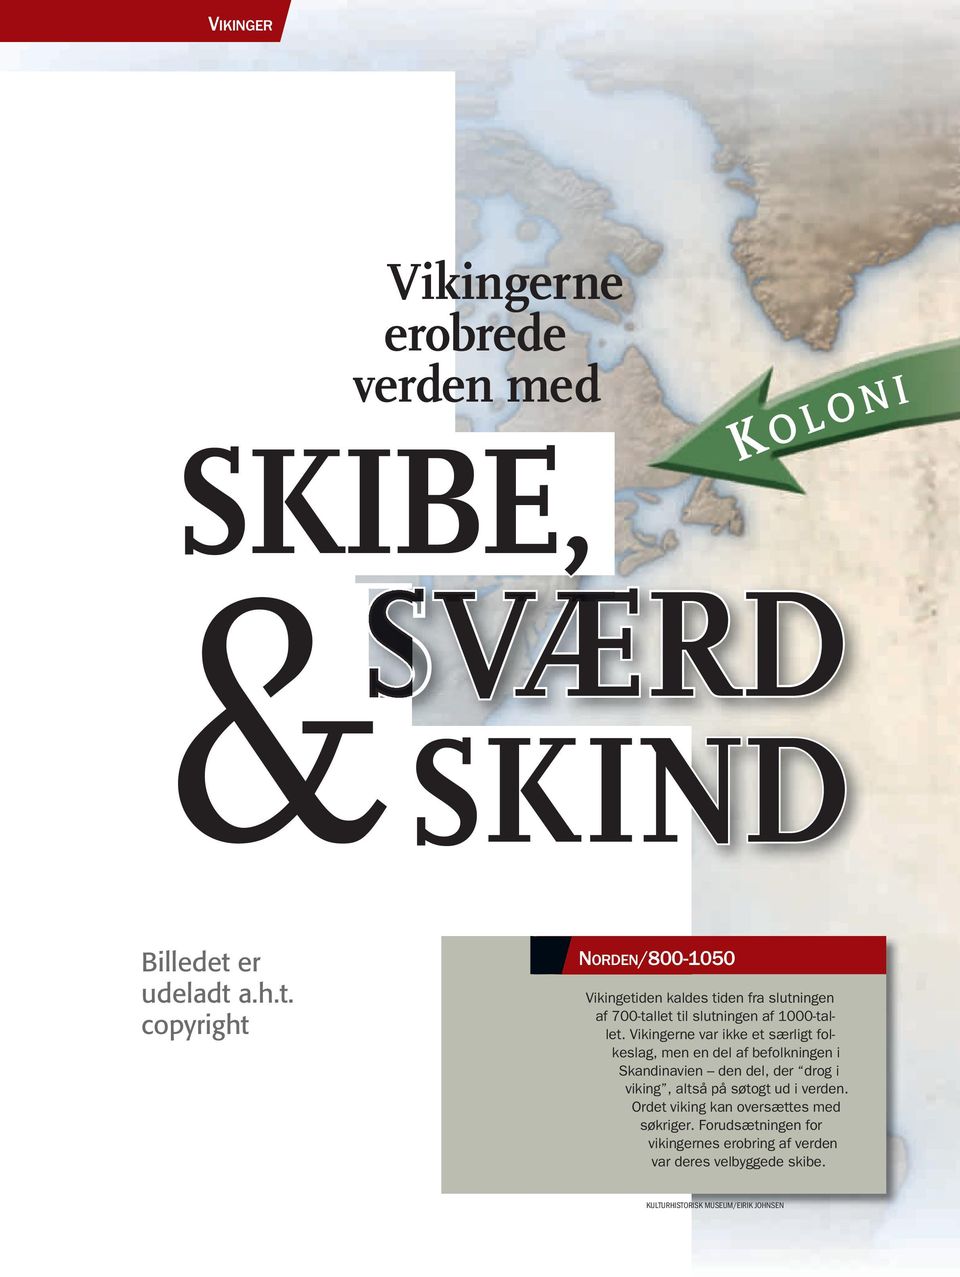 Vikingerne var ikke et særligt folkeslag, men en del af befolkningen i Skandinavien den del, der drog i viking, altså